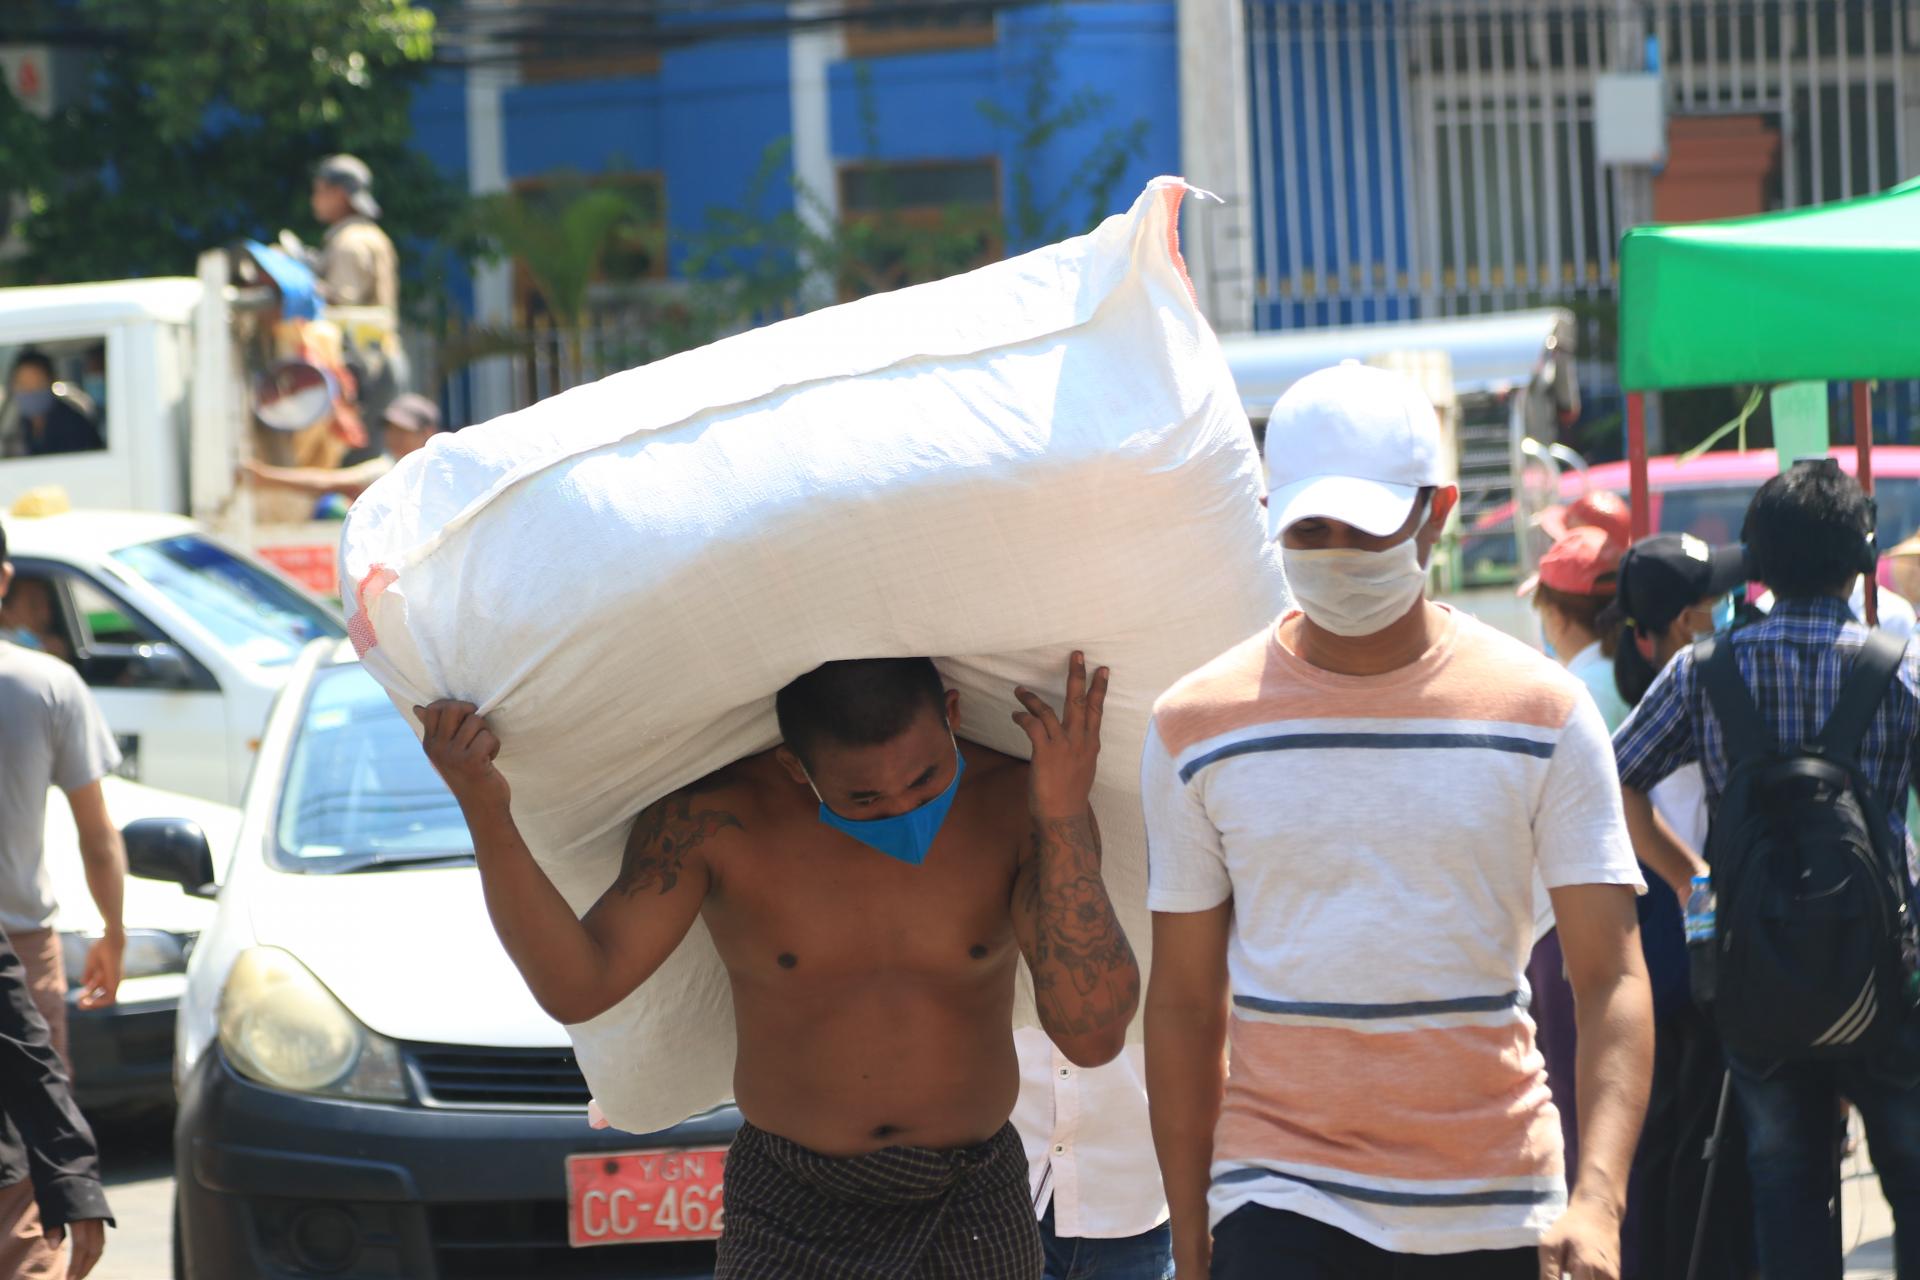 ရန်ကုန်မြို့လယ်တစ်နေရာတွင် သွားလာနေသူအချို့ကို တွေ့ရစဉ်